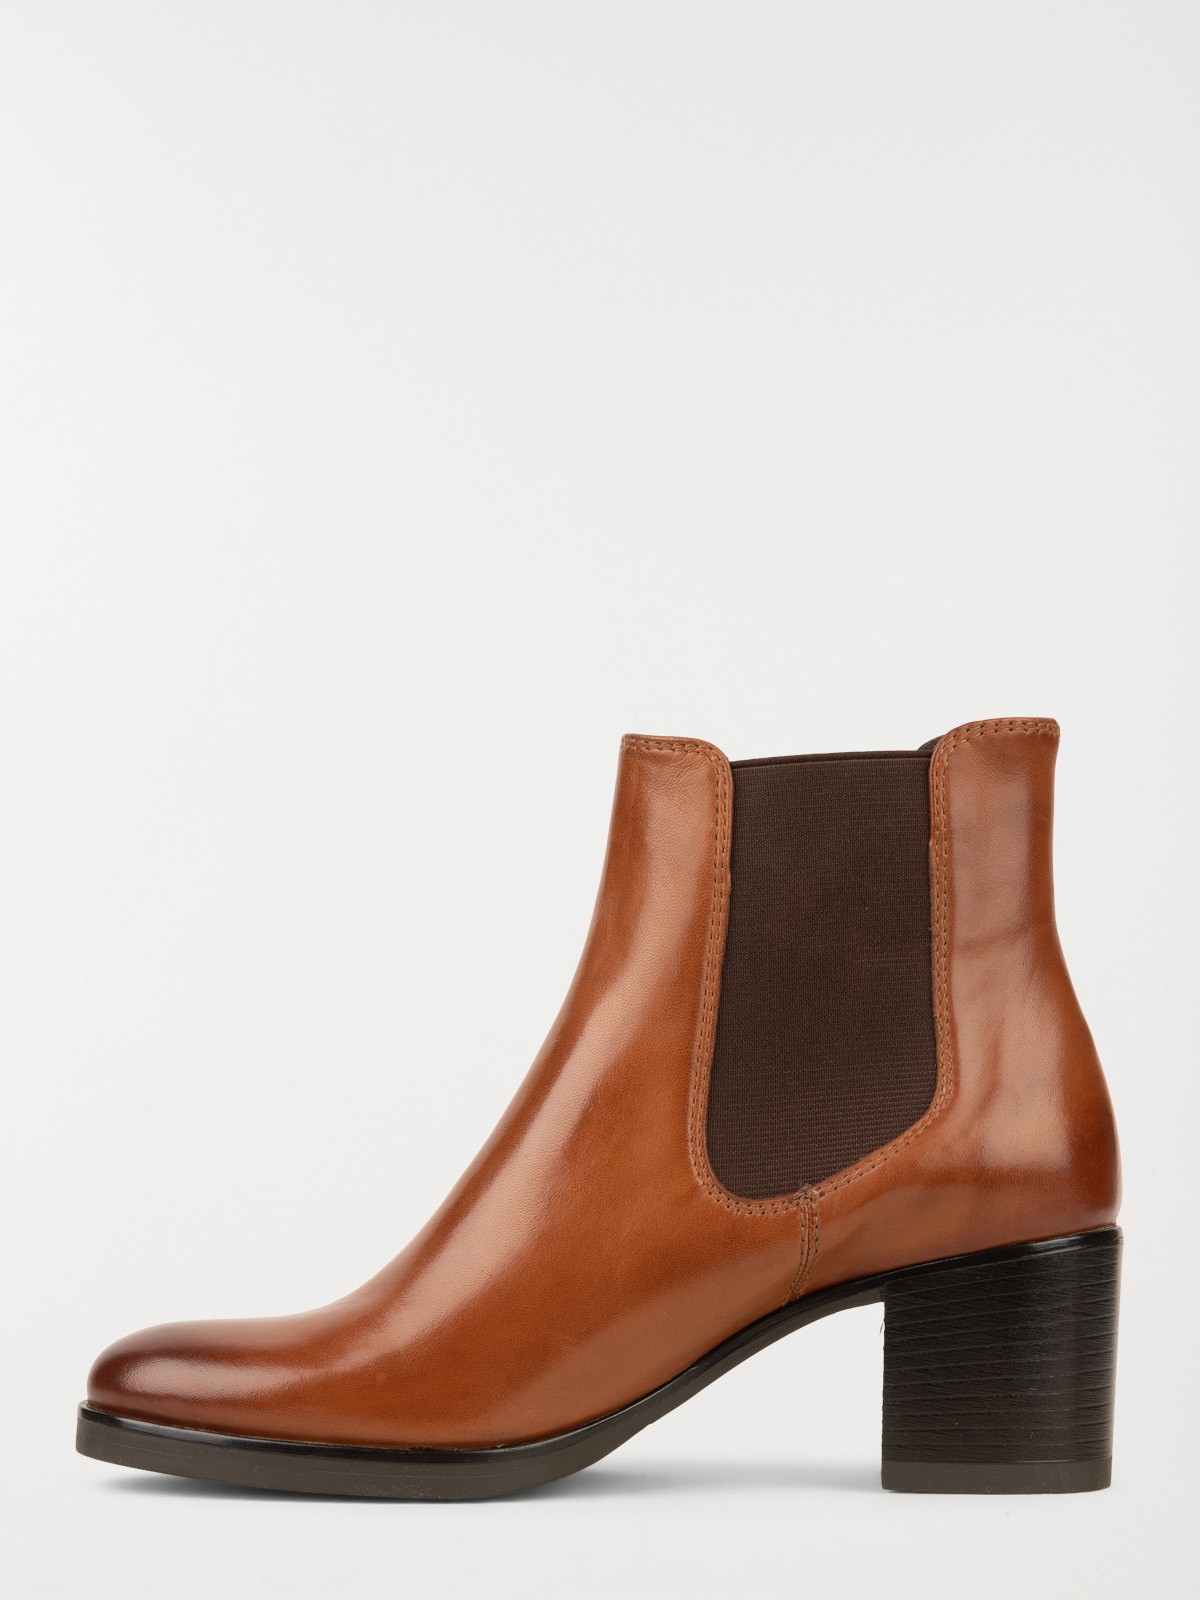 Chaussures à lacets marron femme (36-41) - DistriCenter